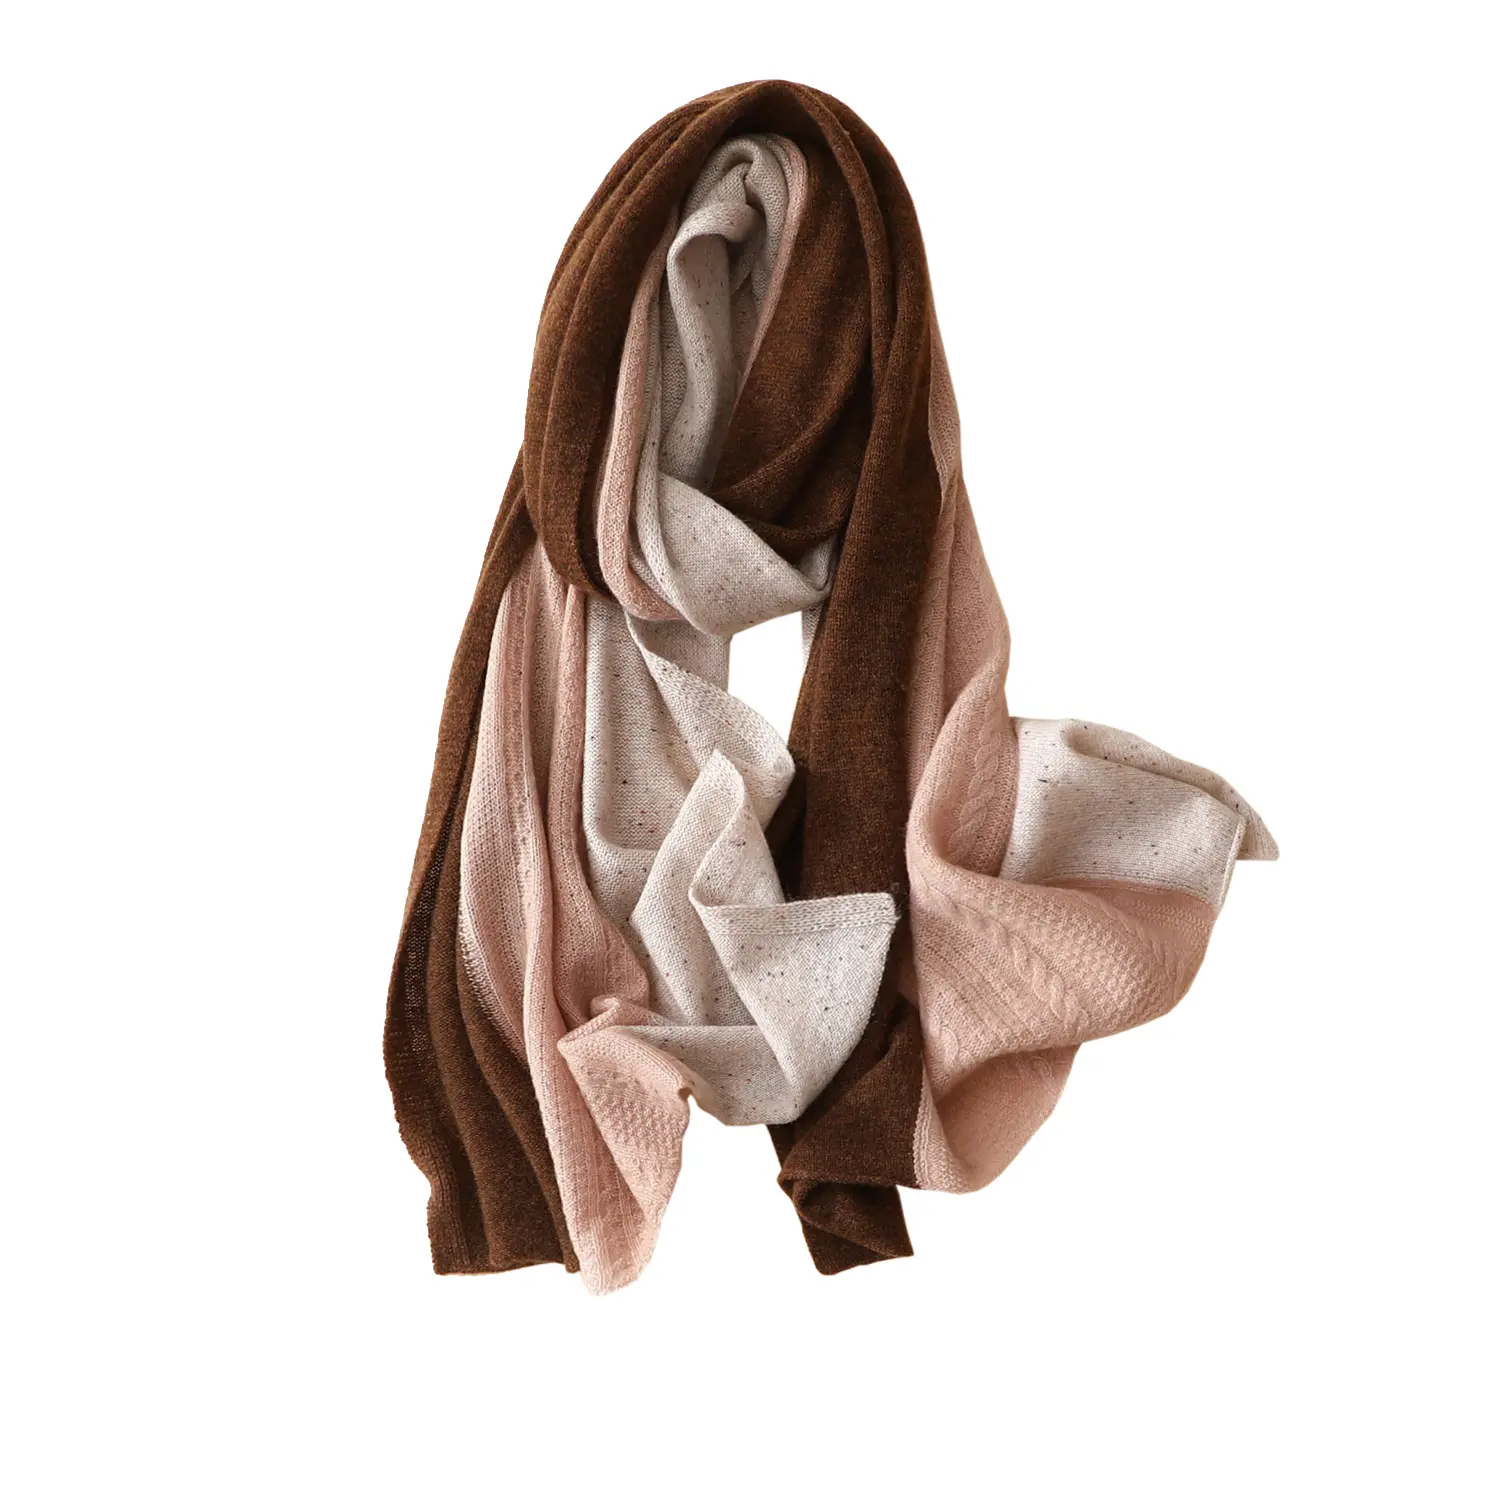 OEM/ODM винтажный Лондонский Свободный 100% кашемировый шарф в европейском стиле тонкие экологически чистые модные теплые шали разных цветов от производителя